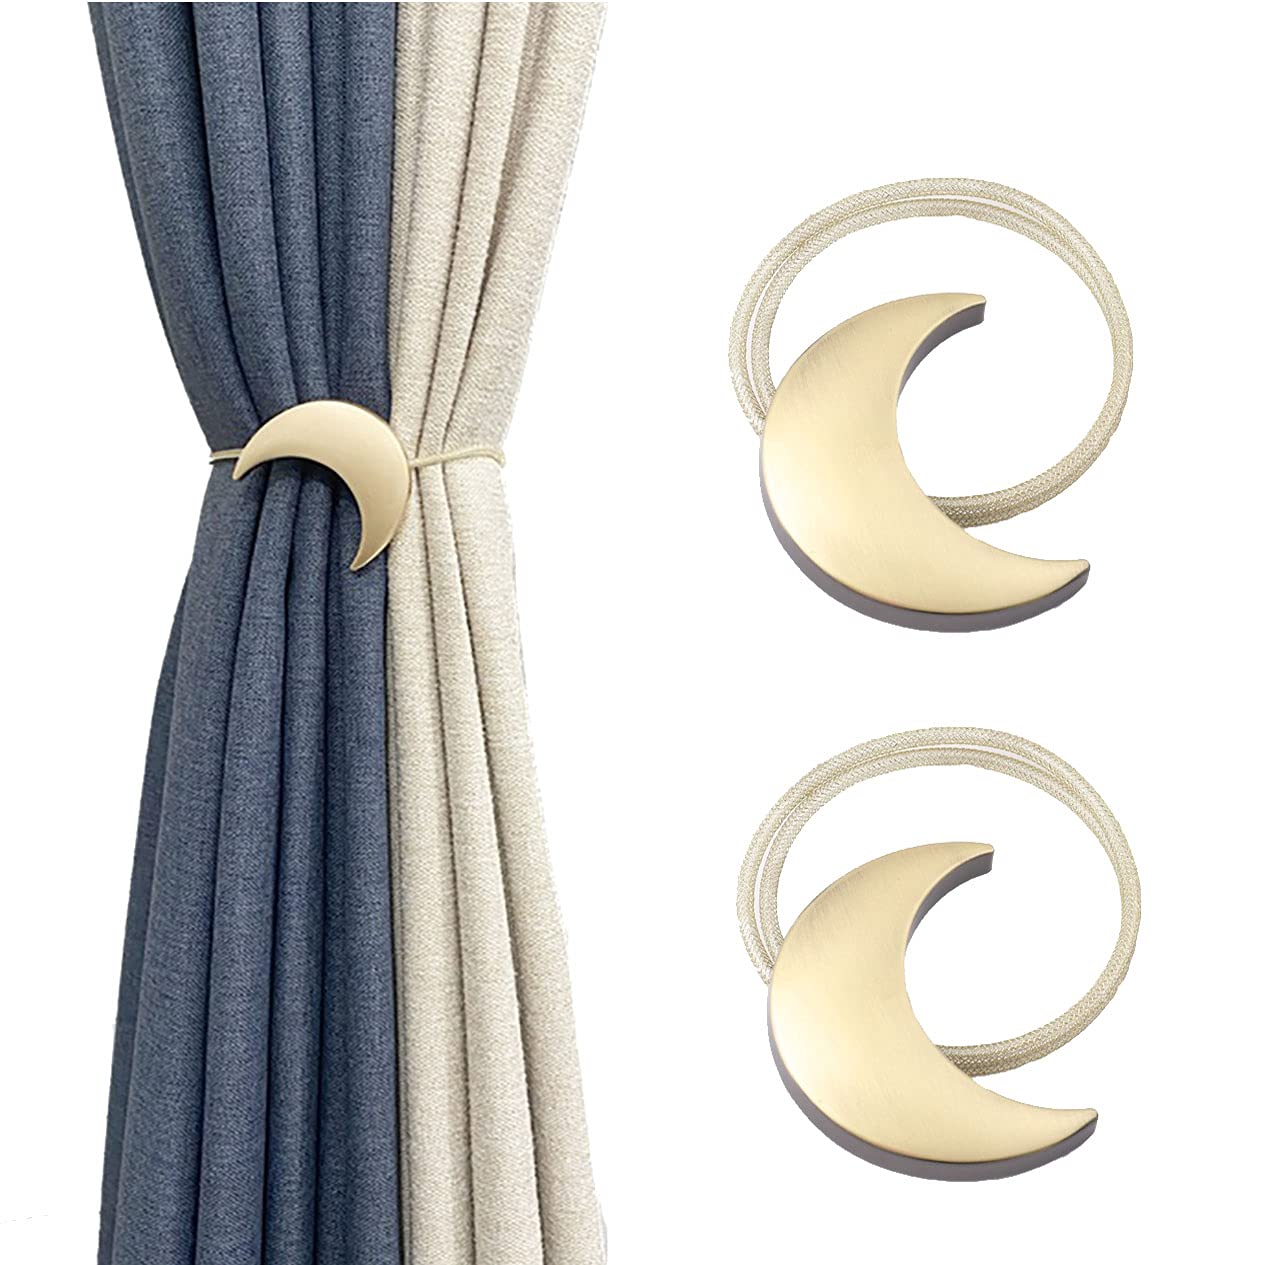 Alzapaños magneticos para cortinas